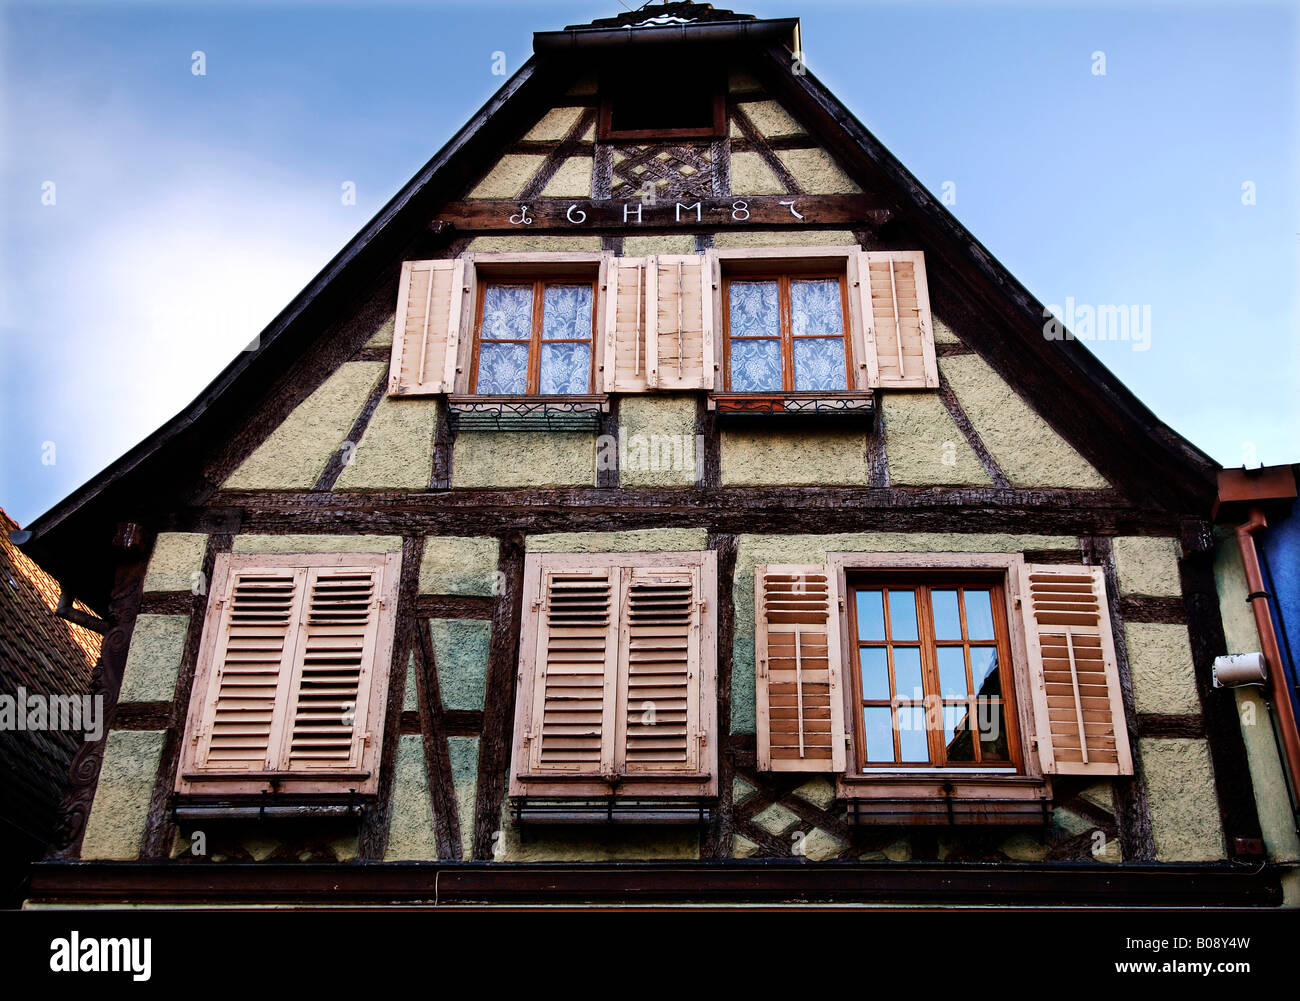 Façade d'une maison à colombages historique avec fenêtre volets roulants, Ribeauvillé, Alsace, France, Europe Banque D'Images